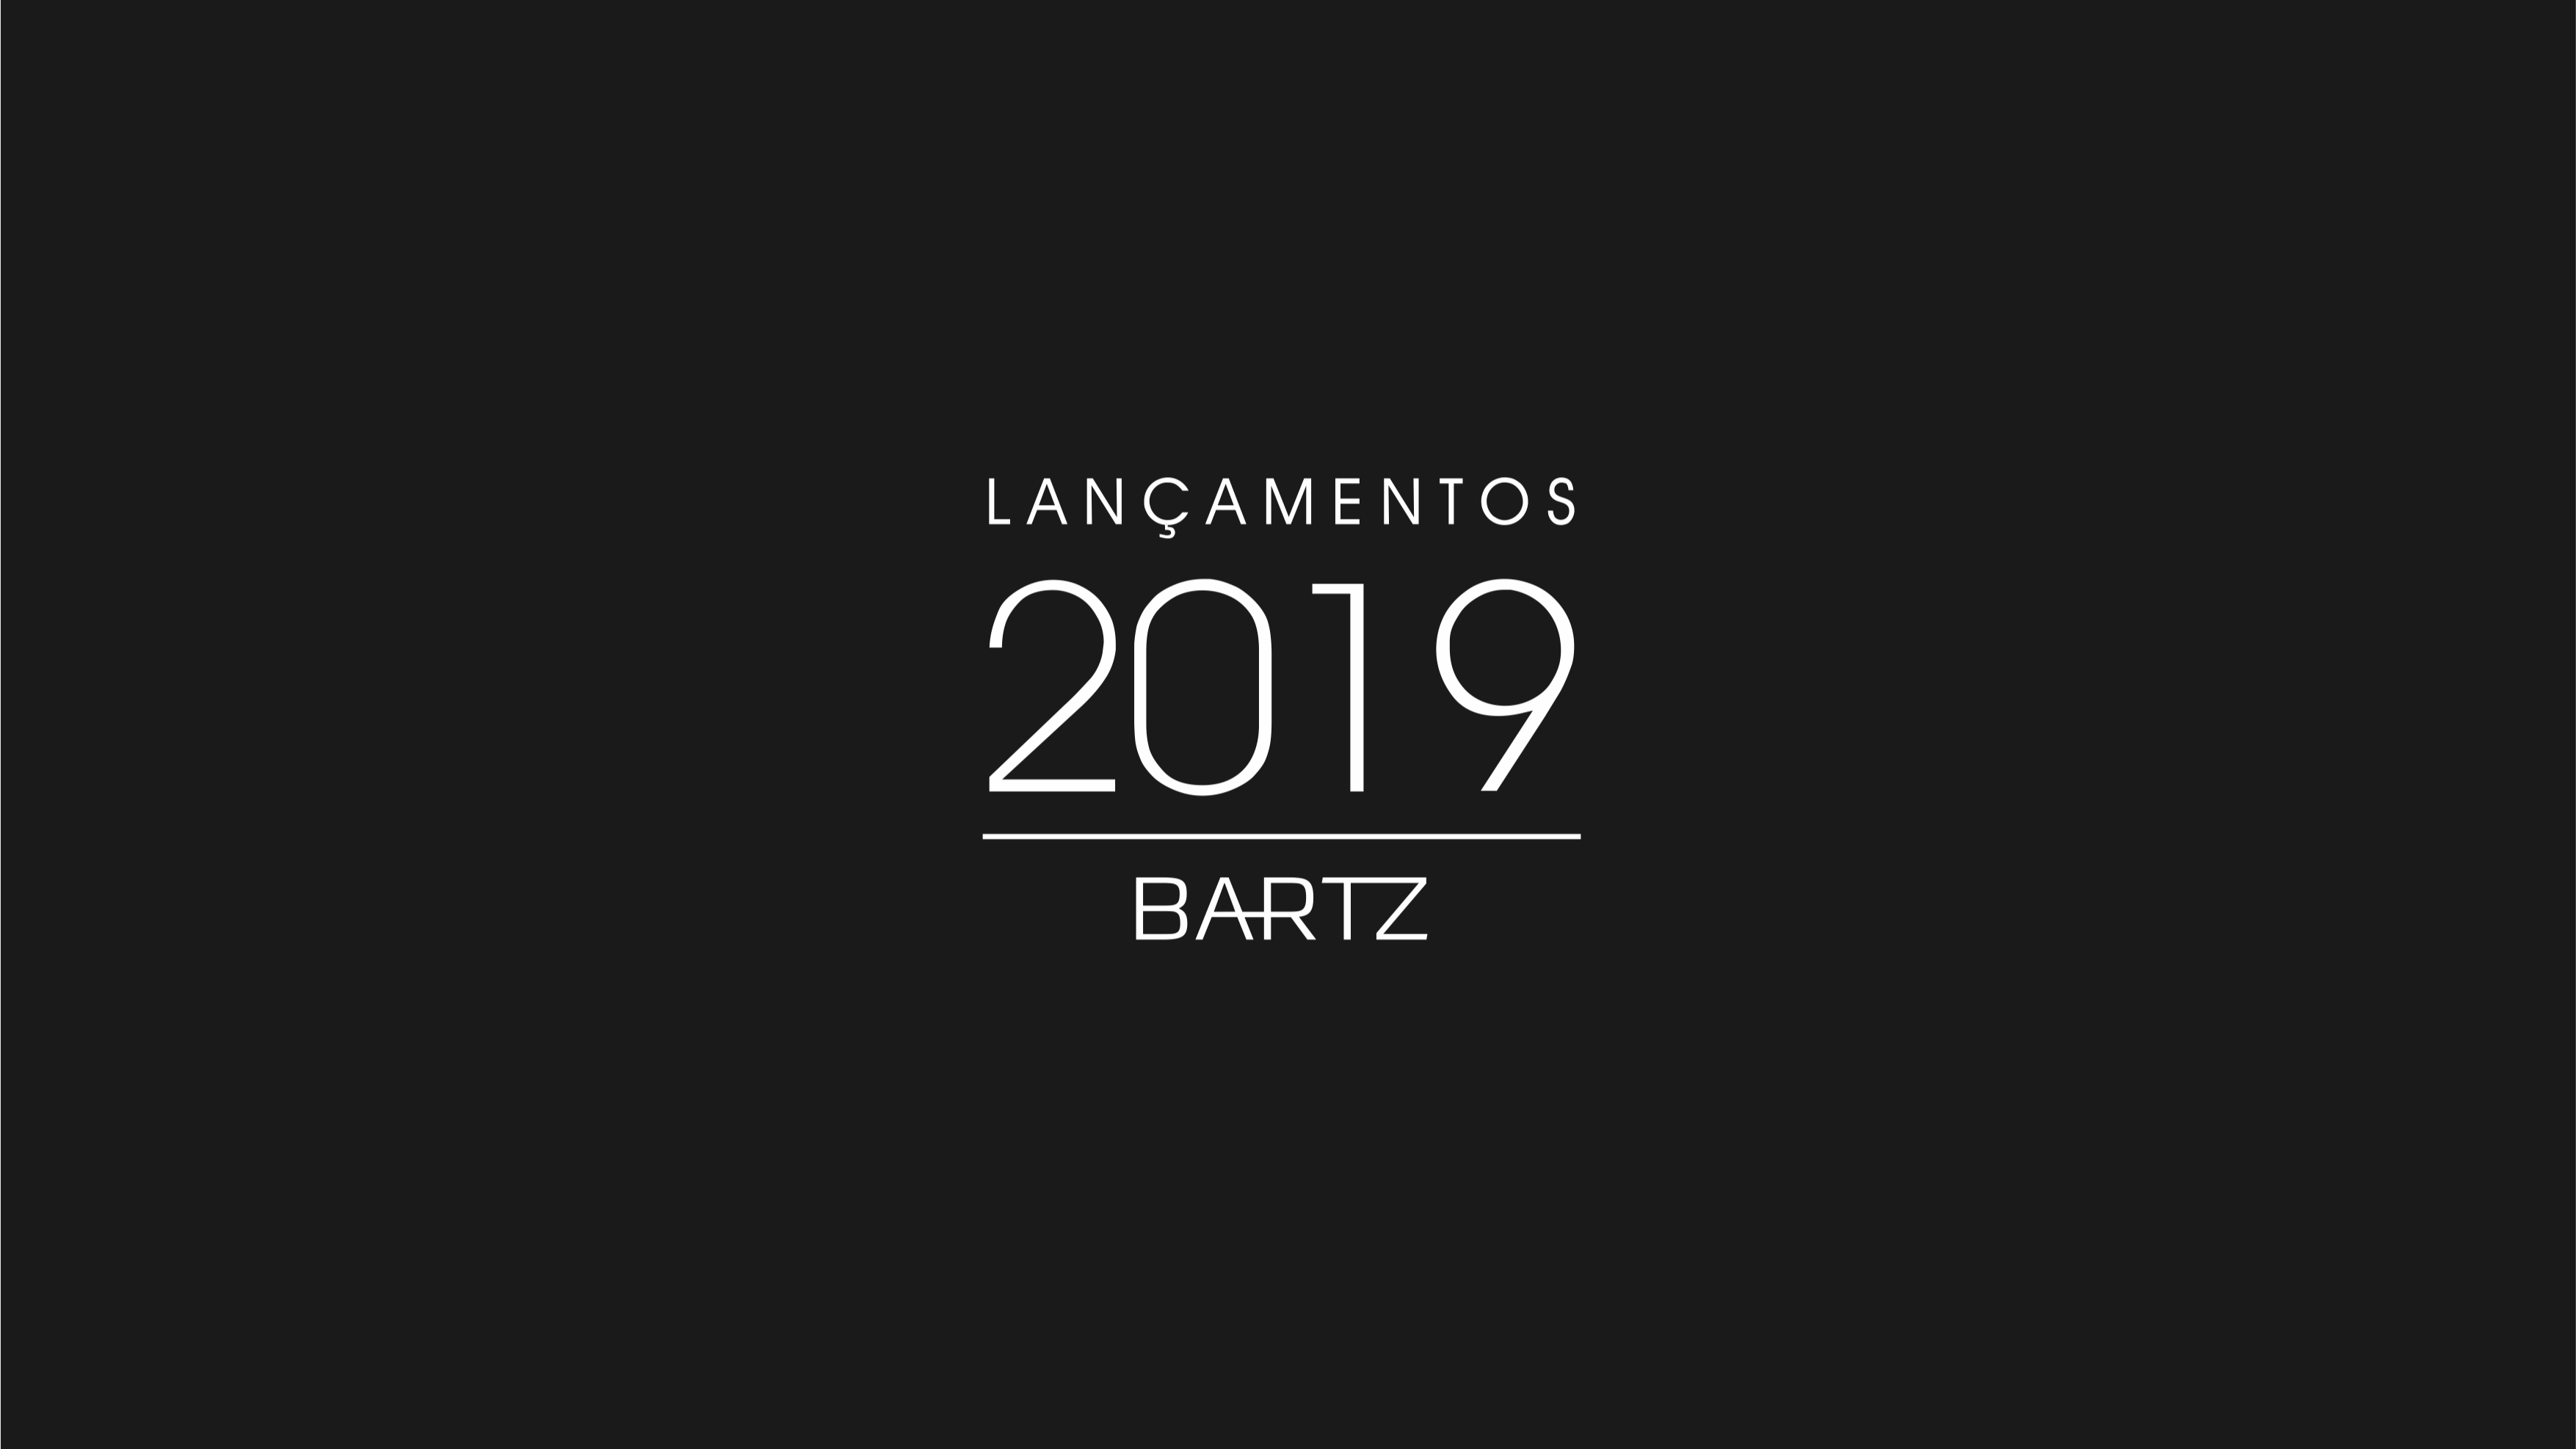 Lançamentos Bartz 2019